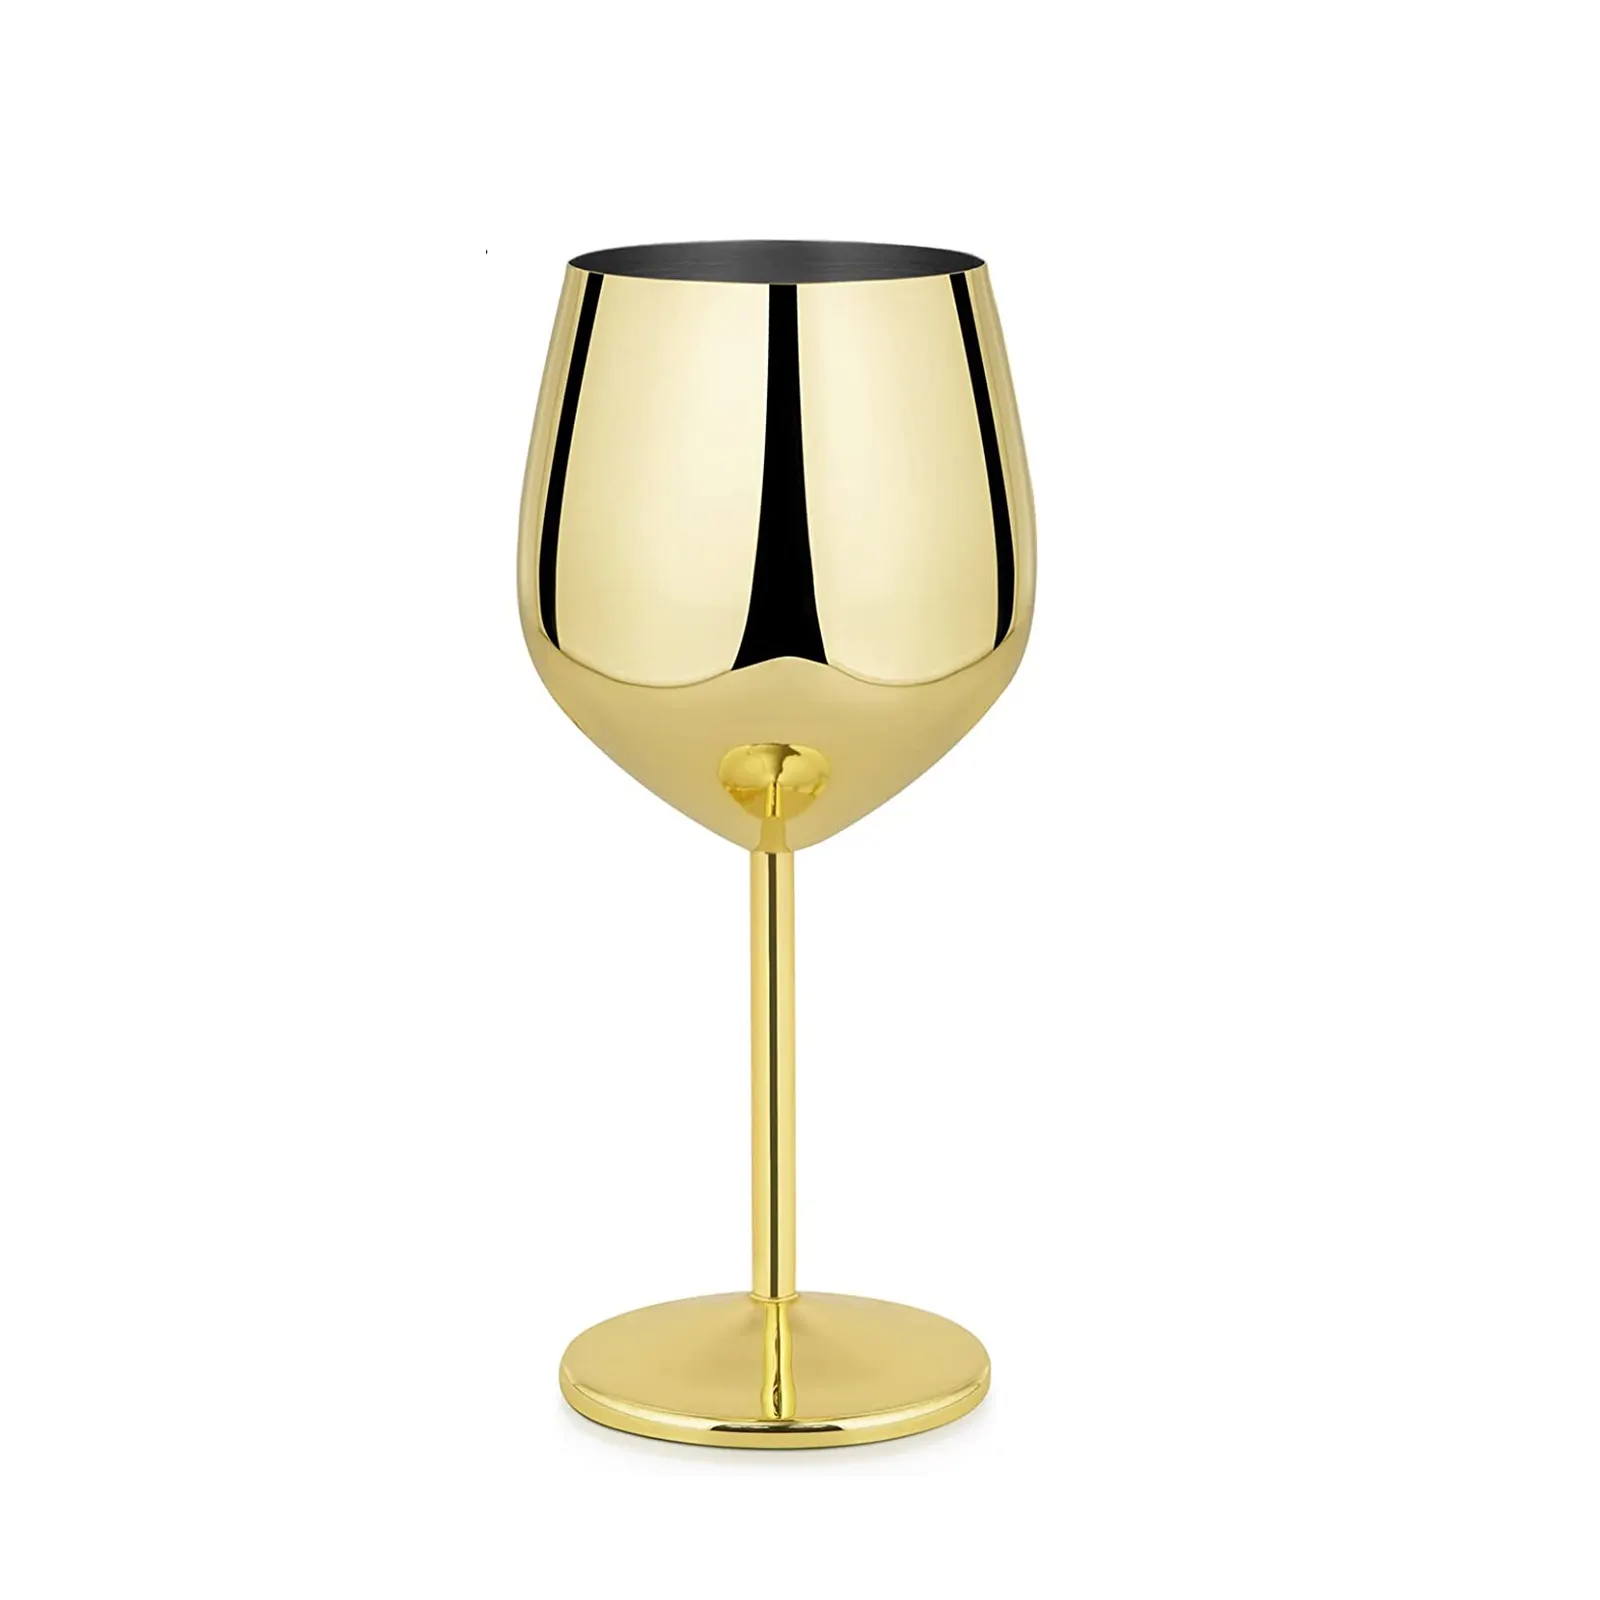 المحمولة الفولاذ المقاوم للصدأ الذهب الشرب كأس النبيذ المعادن غير قابلة للكسر كوب نبيذ أحمر